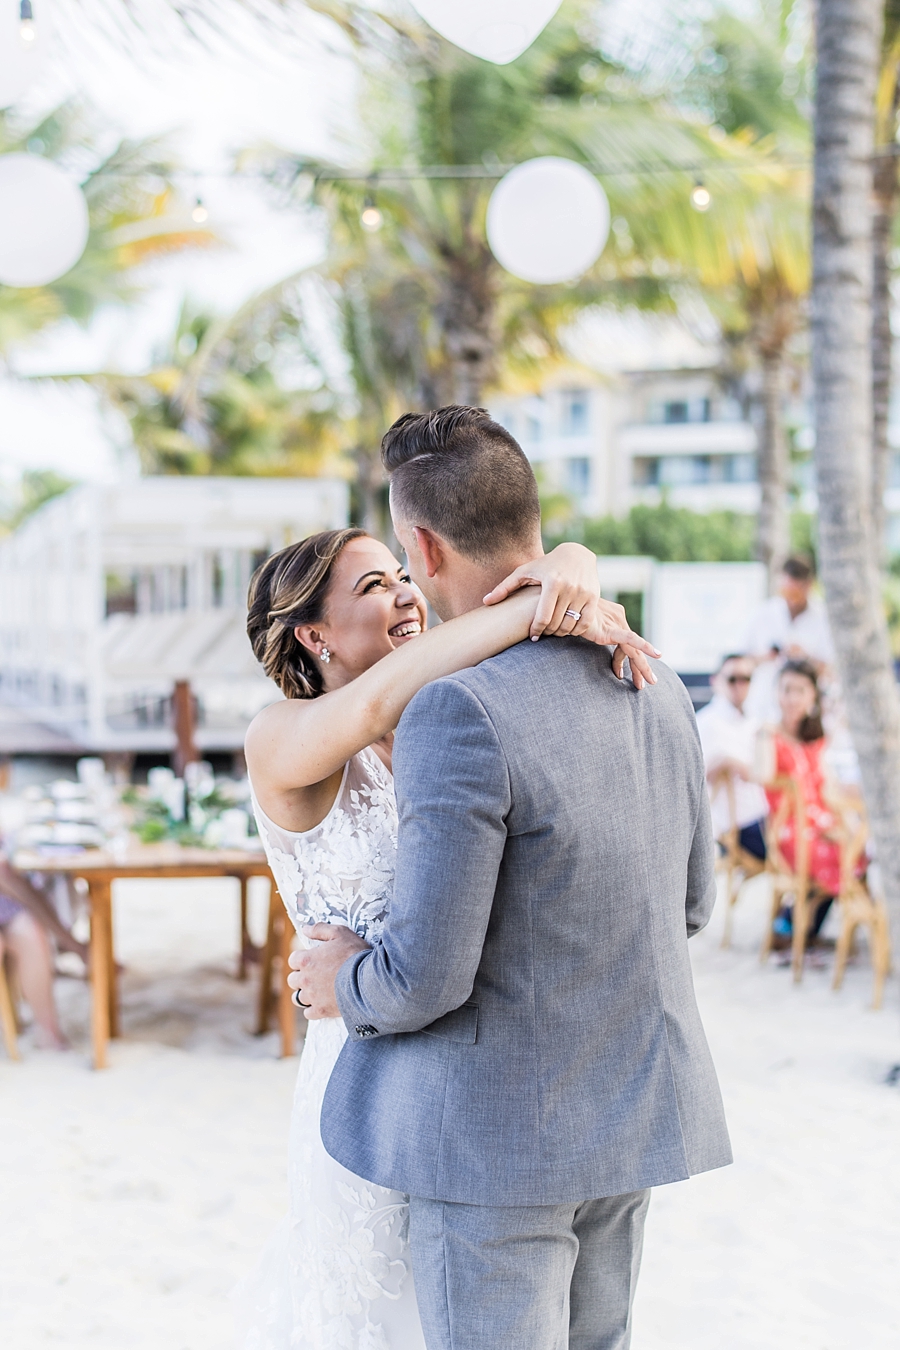 Taylor & Ashley | Royalton Riviera Cancun, Mexico Destination Wedding Photographer